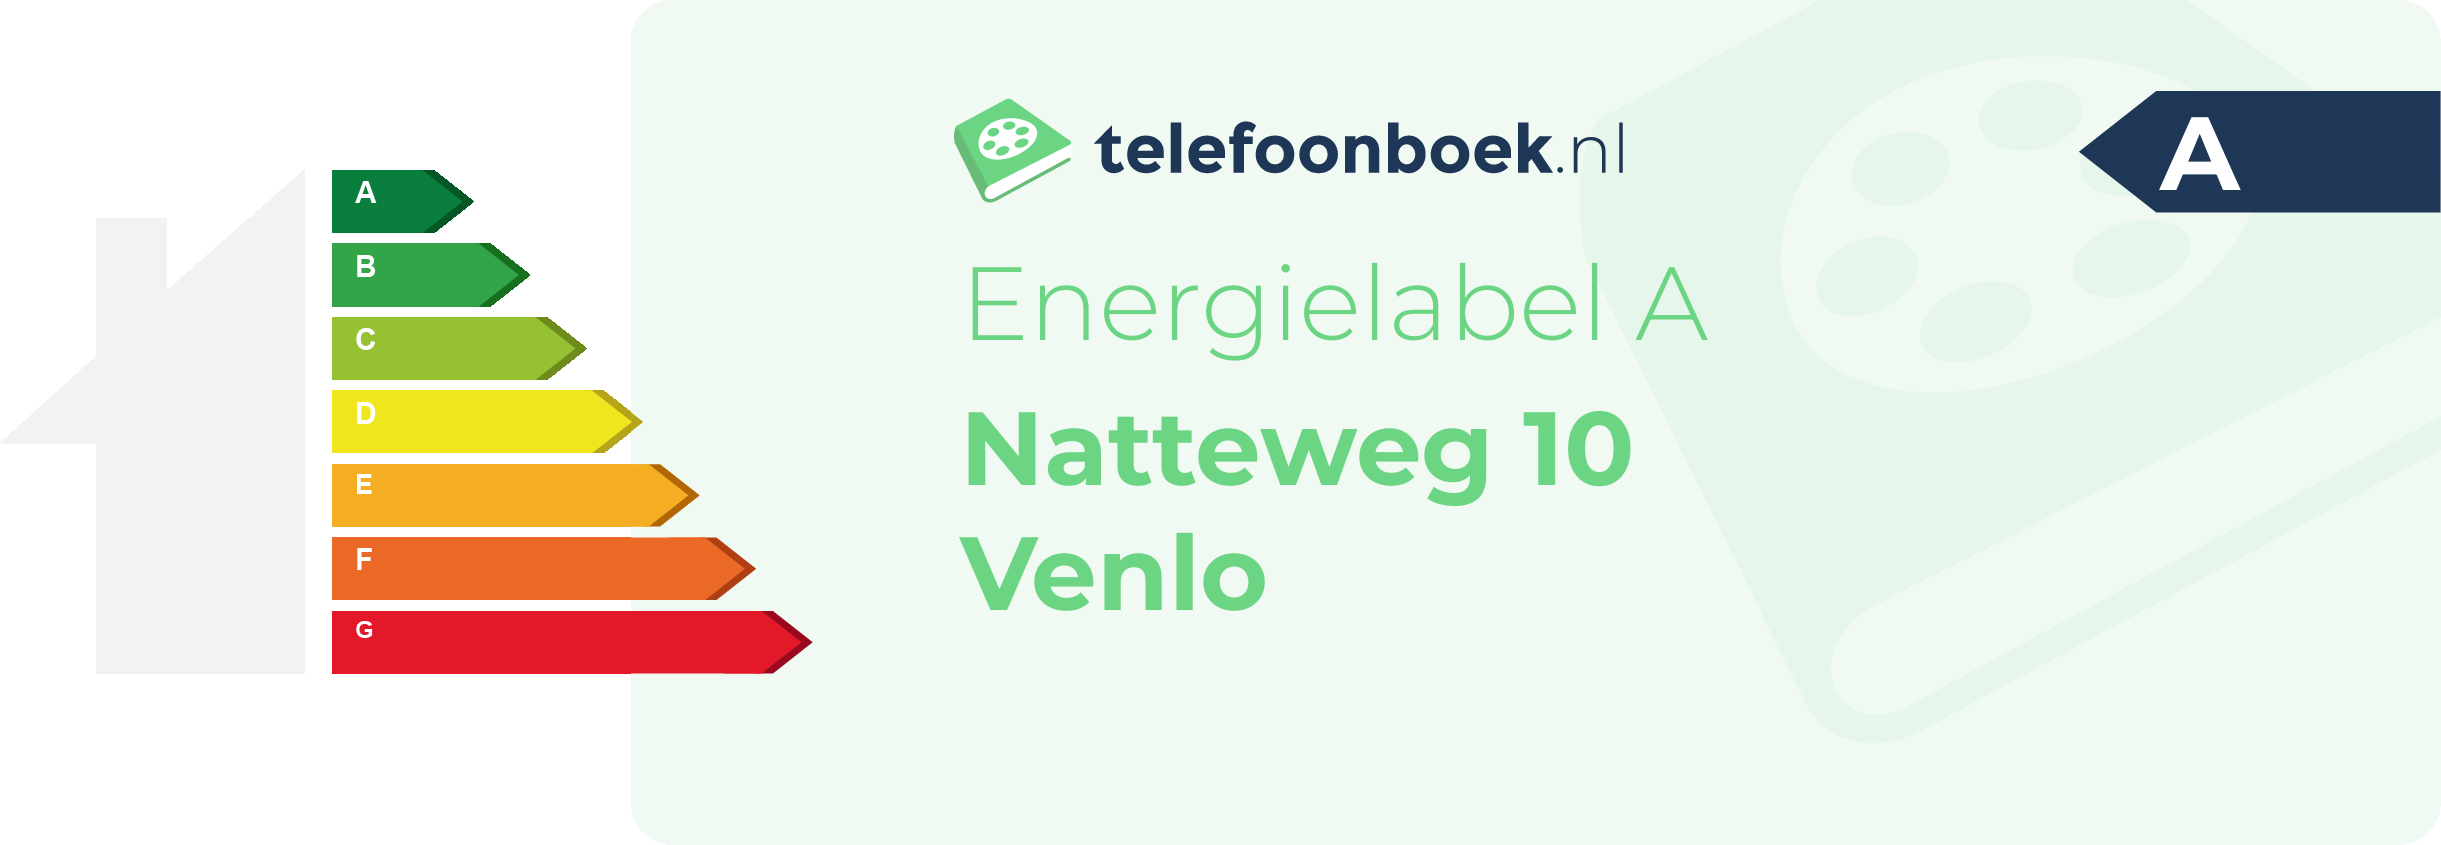 Energielabel Natteweg 10 Venlo